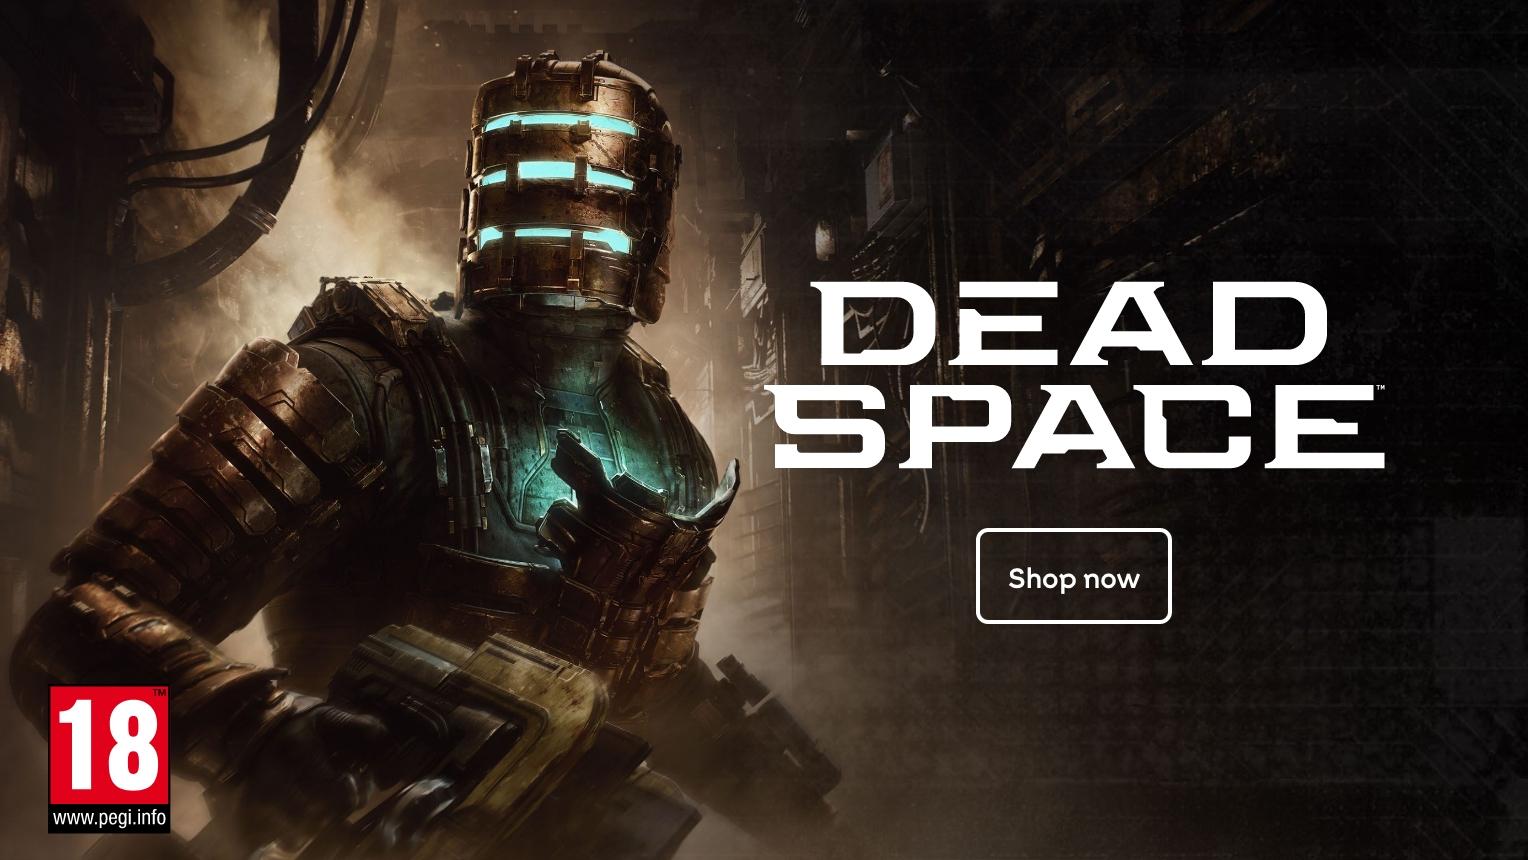 Dead Space. Shop now